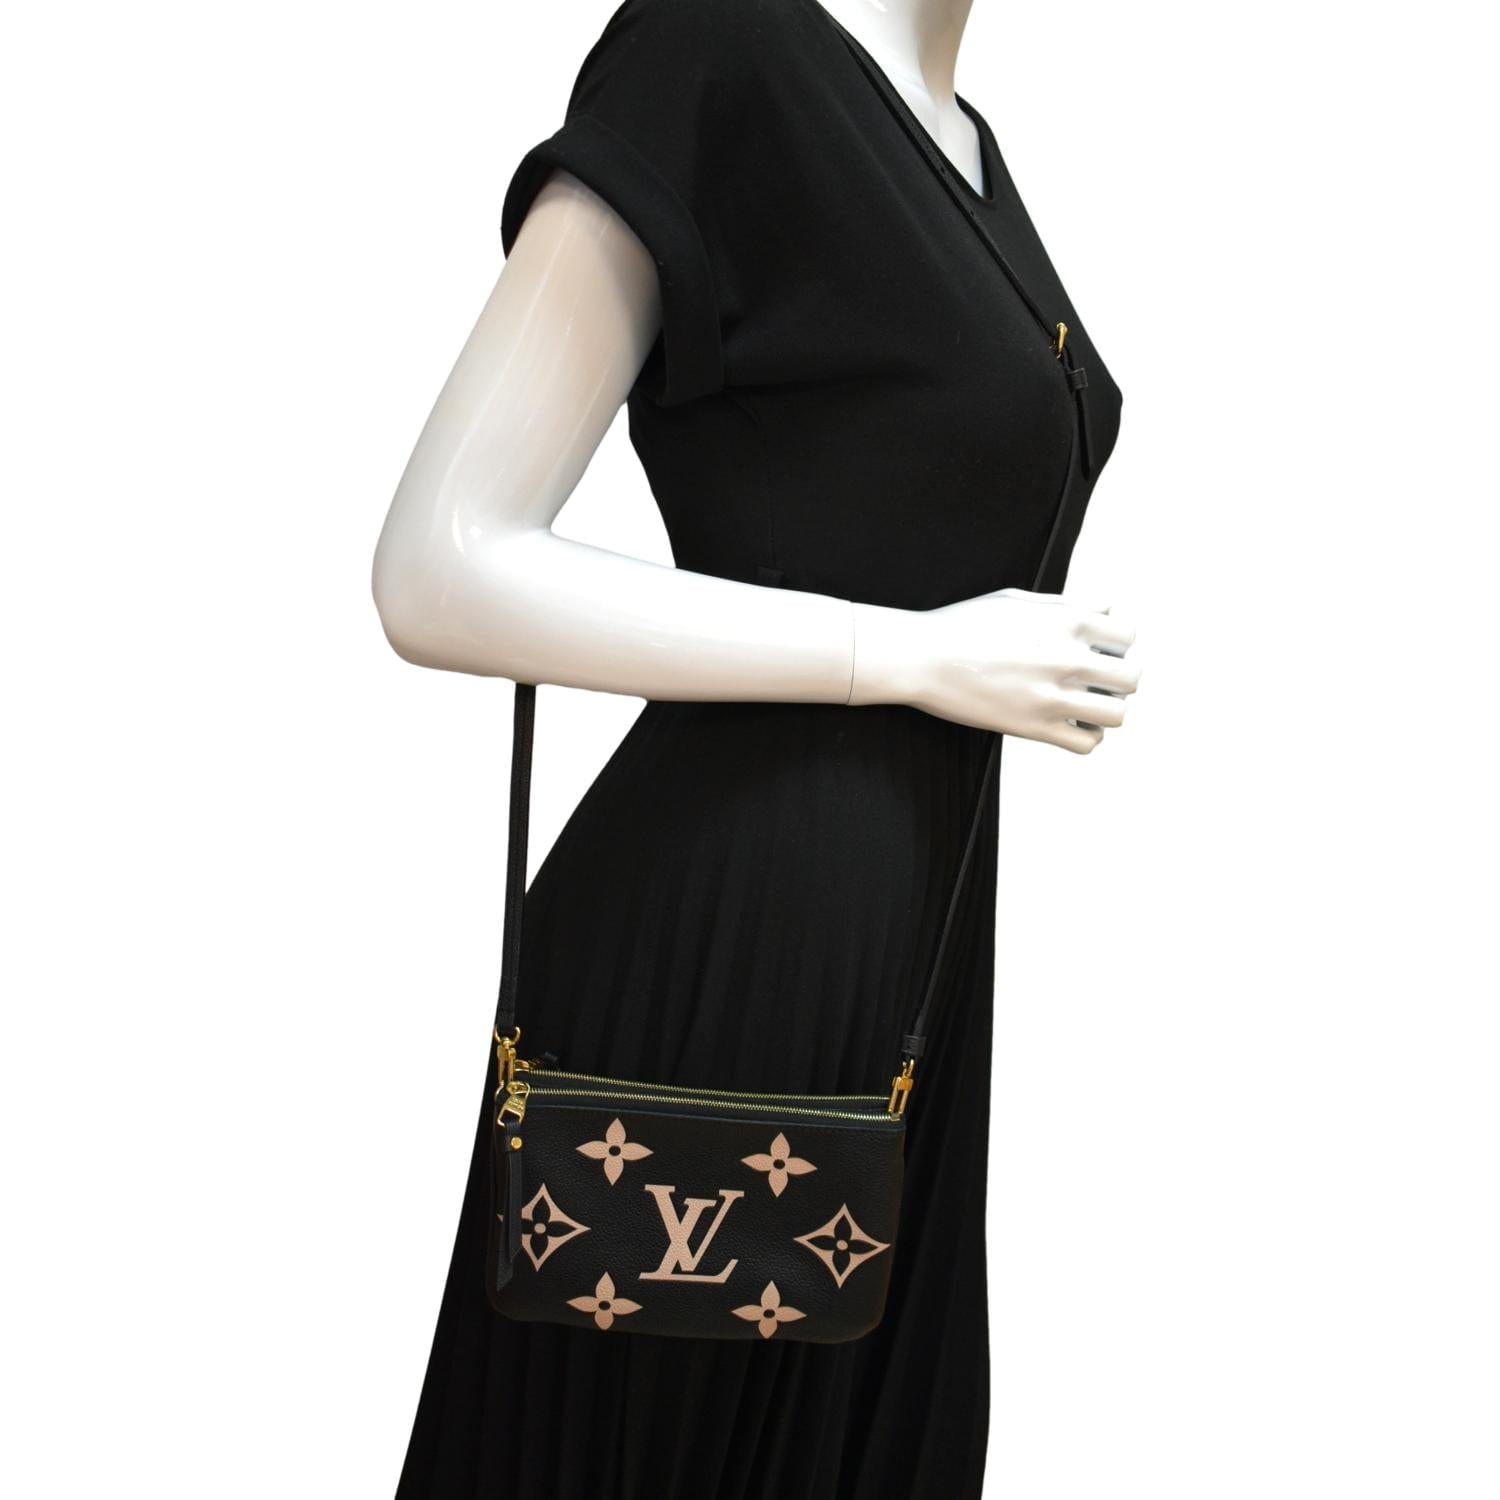 Louis Vuitton Double Zip Pochette Bicolor Monogram Empreinte Giant -  ShopStyle Crossbody Bags